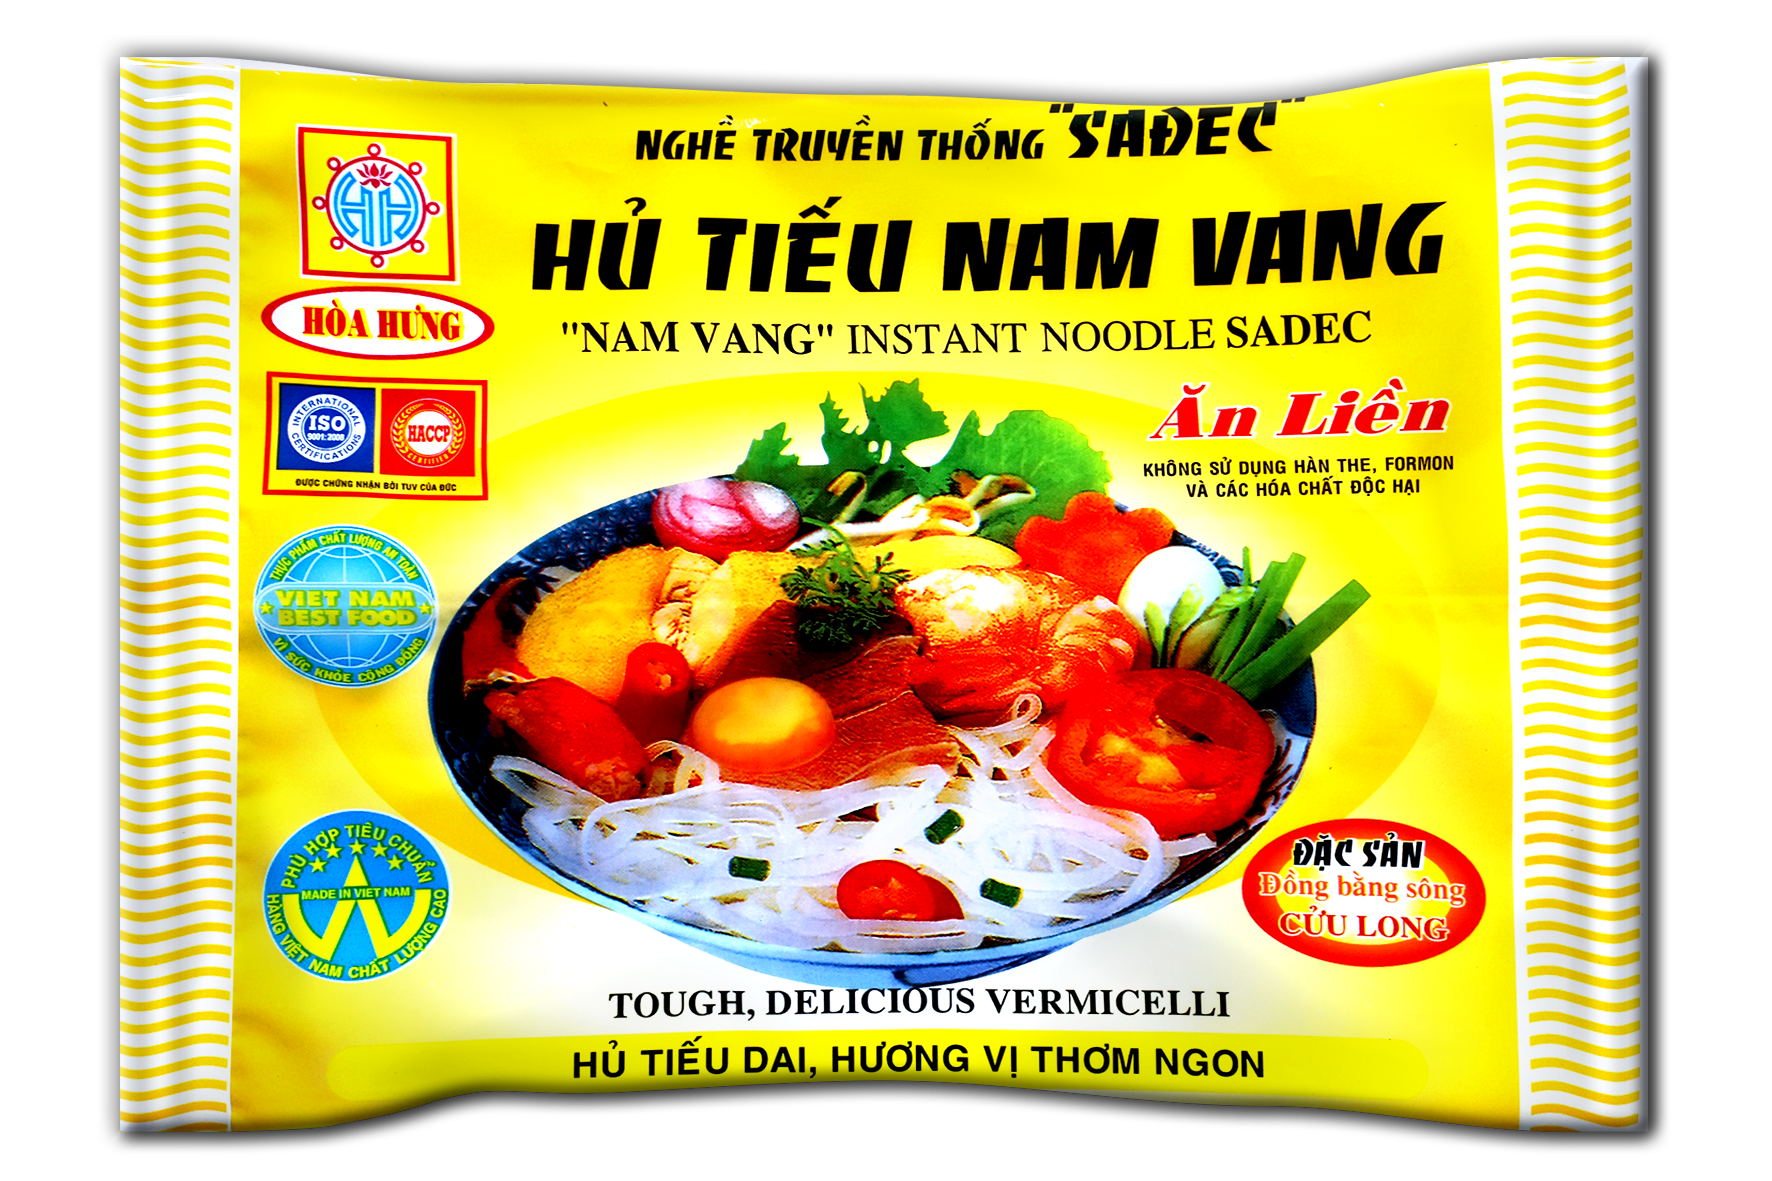 Nam Vang noodles